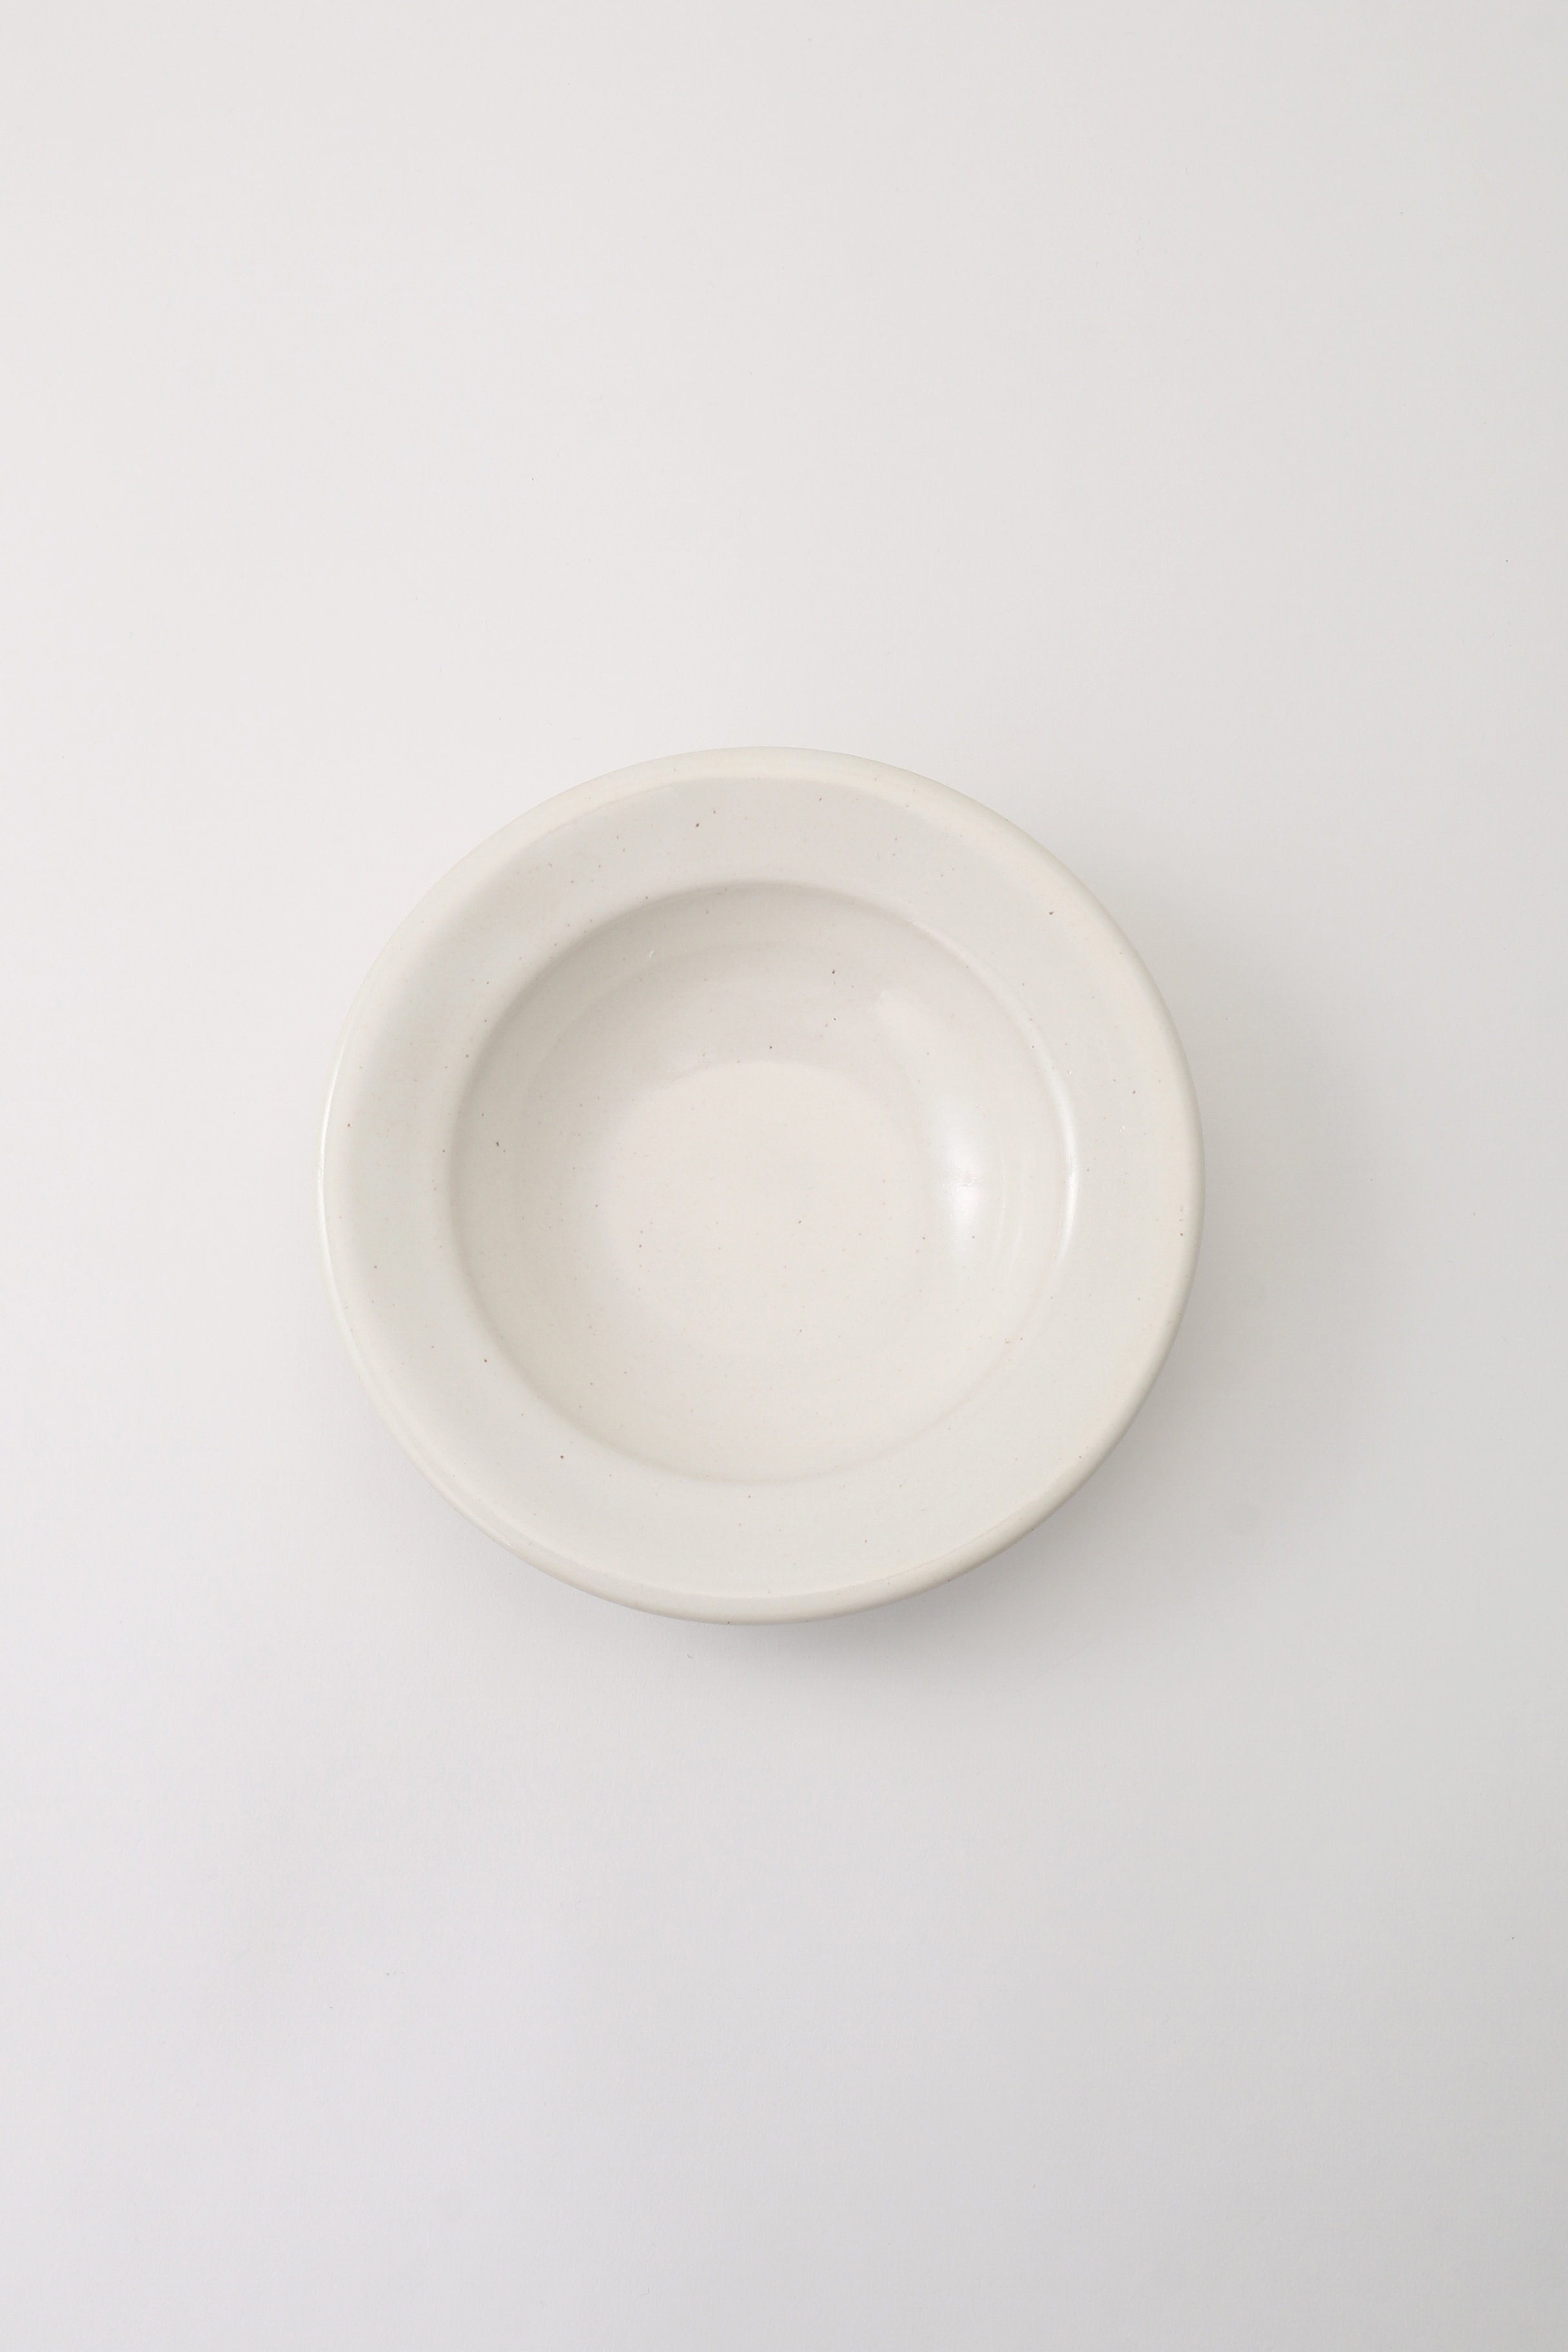 あわびウェア/Awabi wareのリムスープ皿 S(白磁/L01-020)